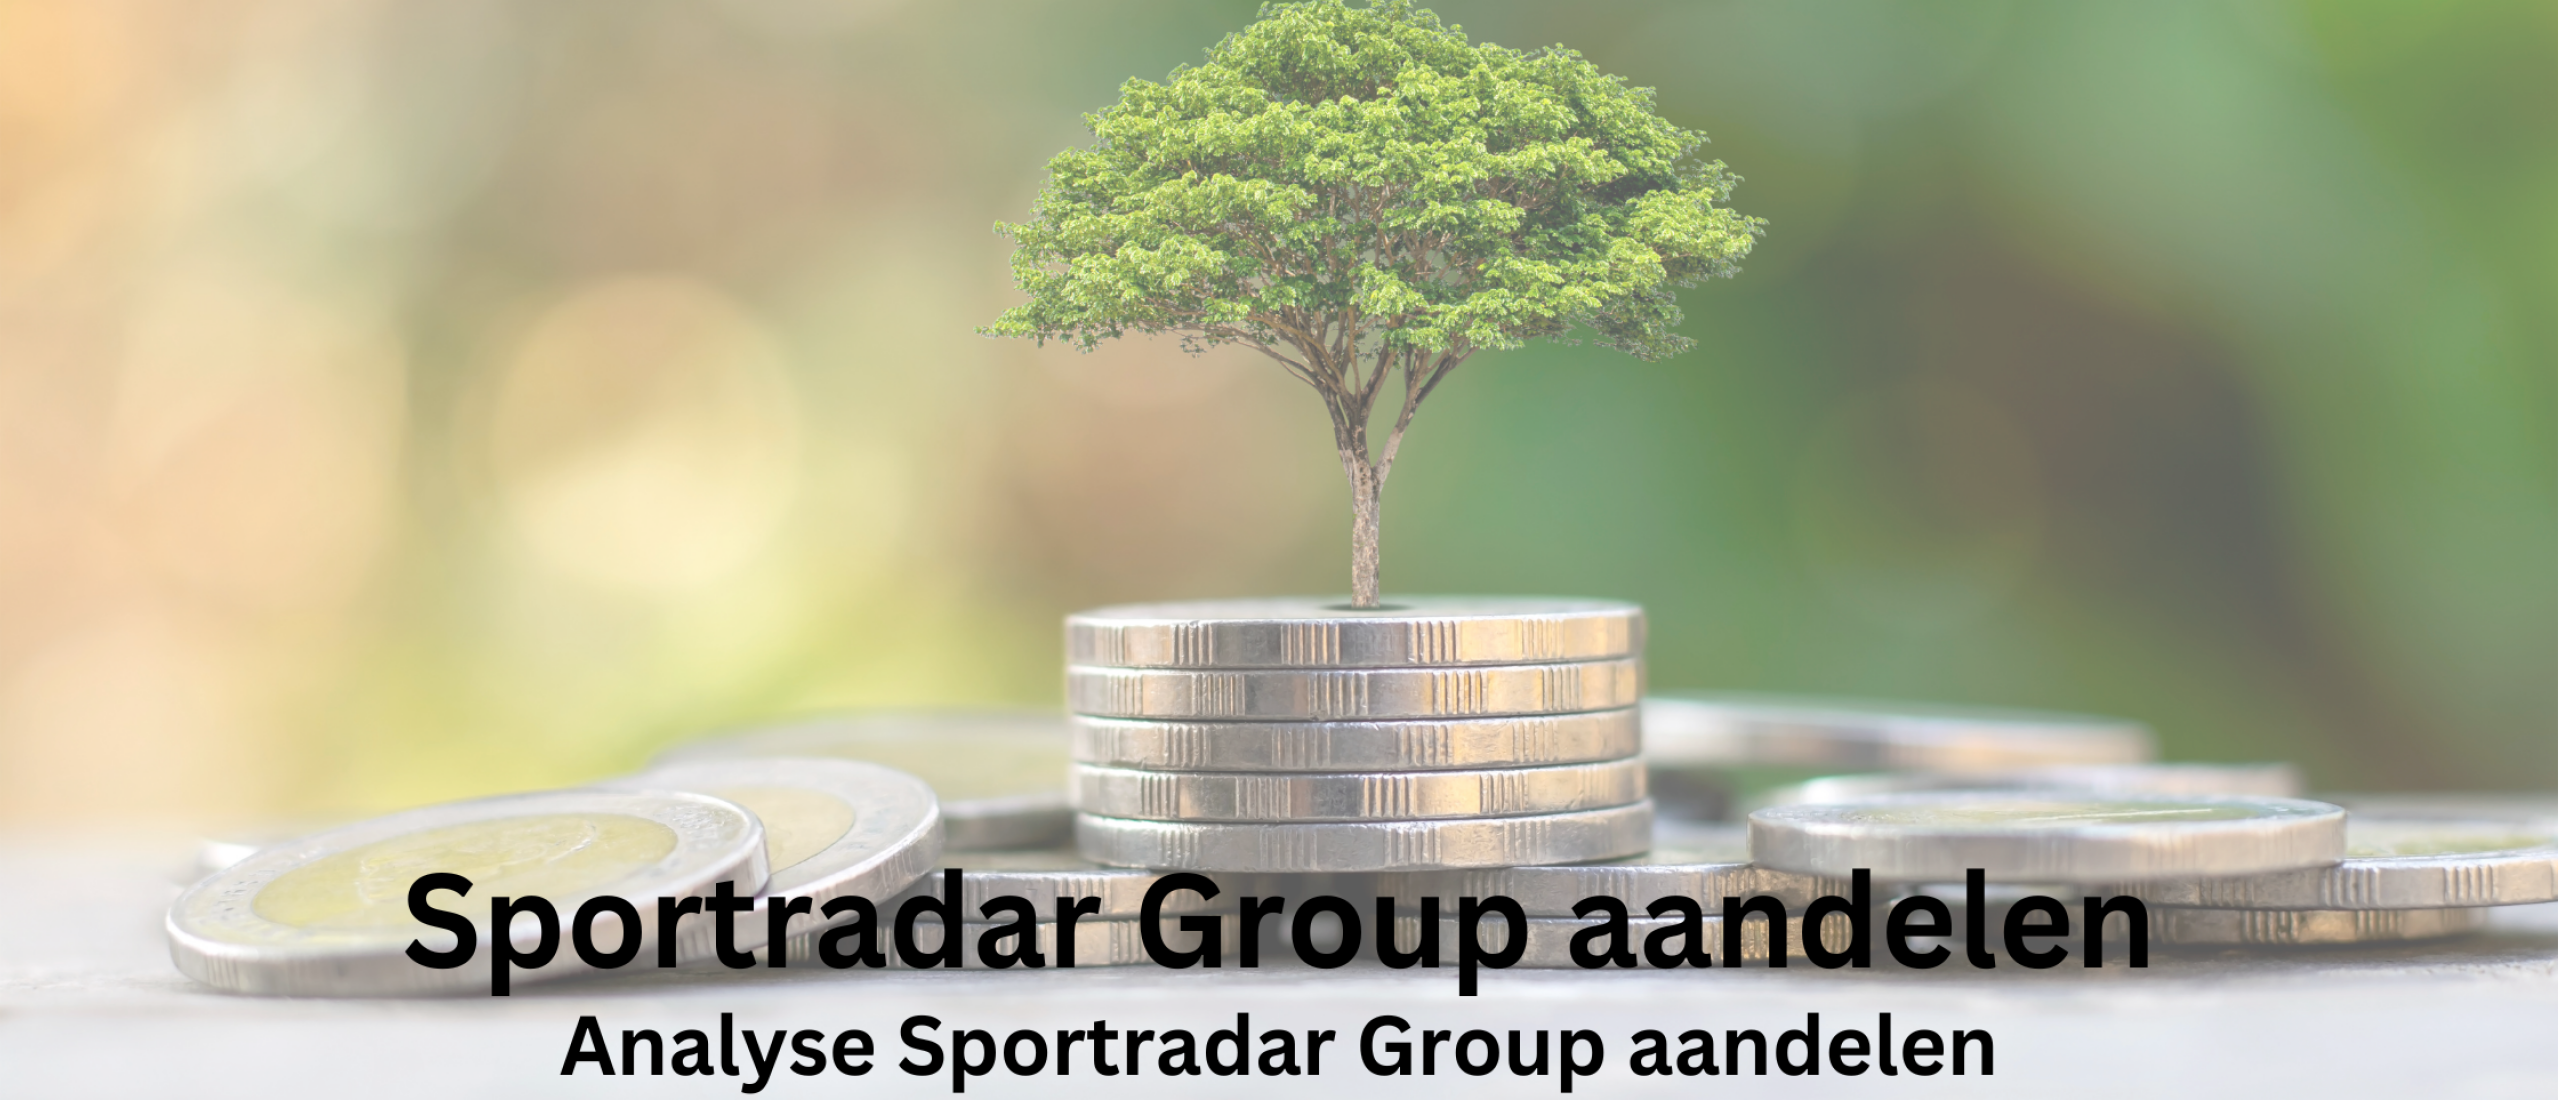 Sportradar Group aandelen